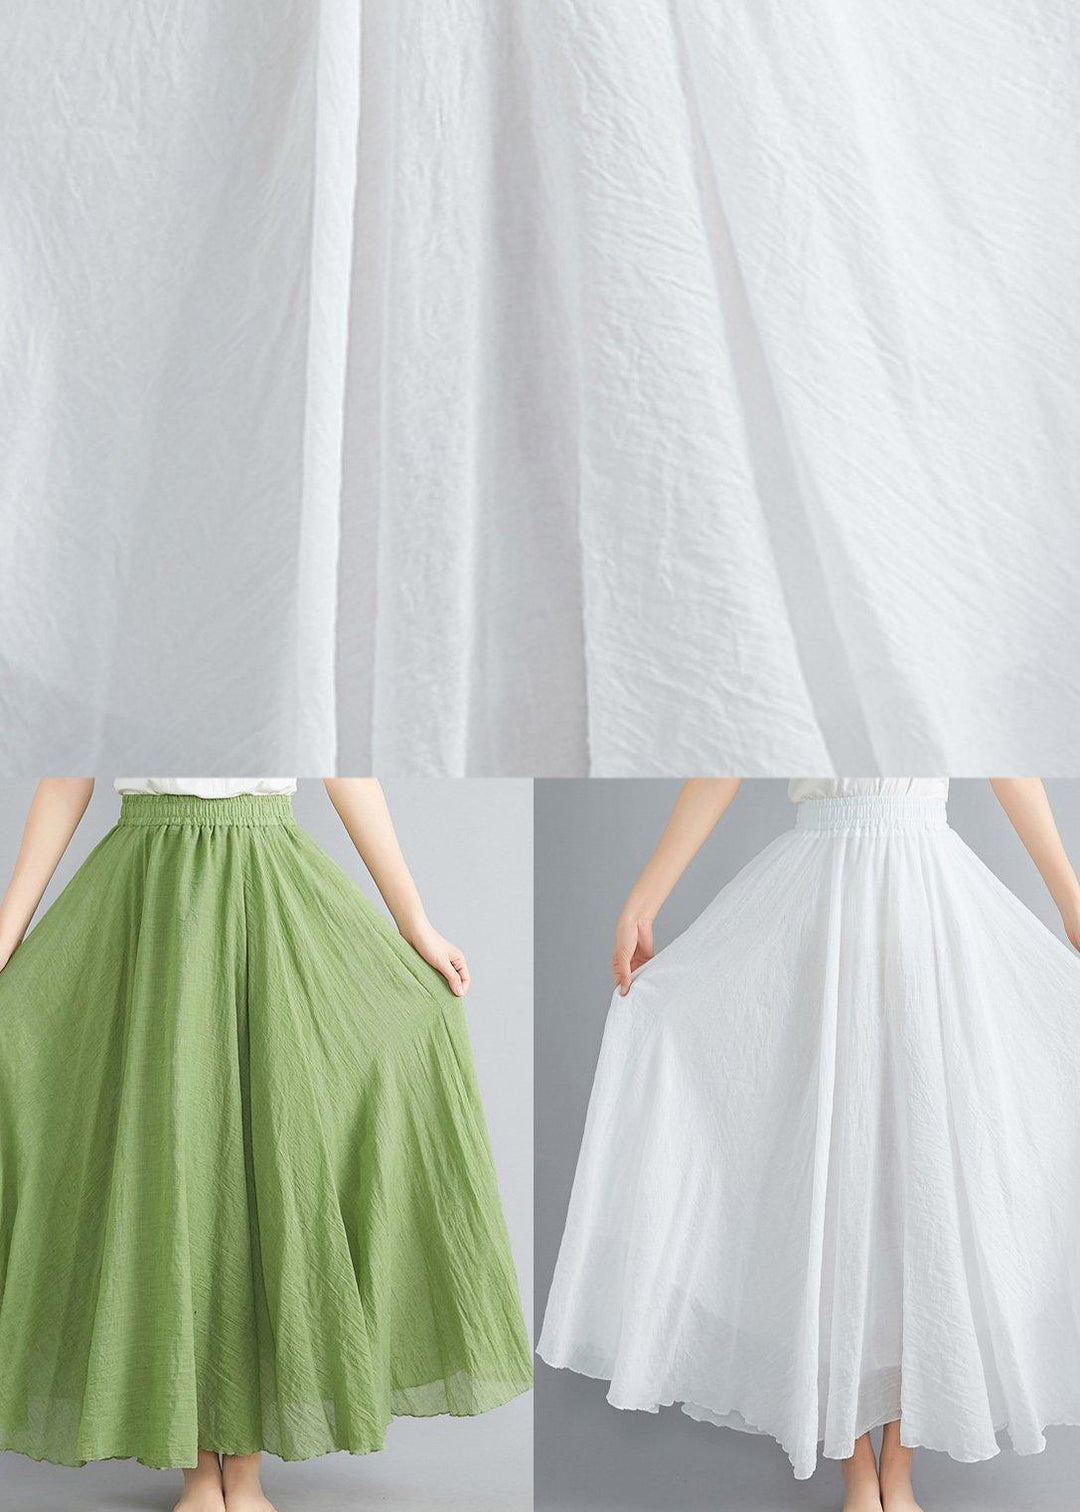 Modern Elastic White Summer Cotton Linen Skirts - Omychic